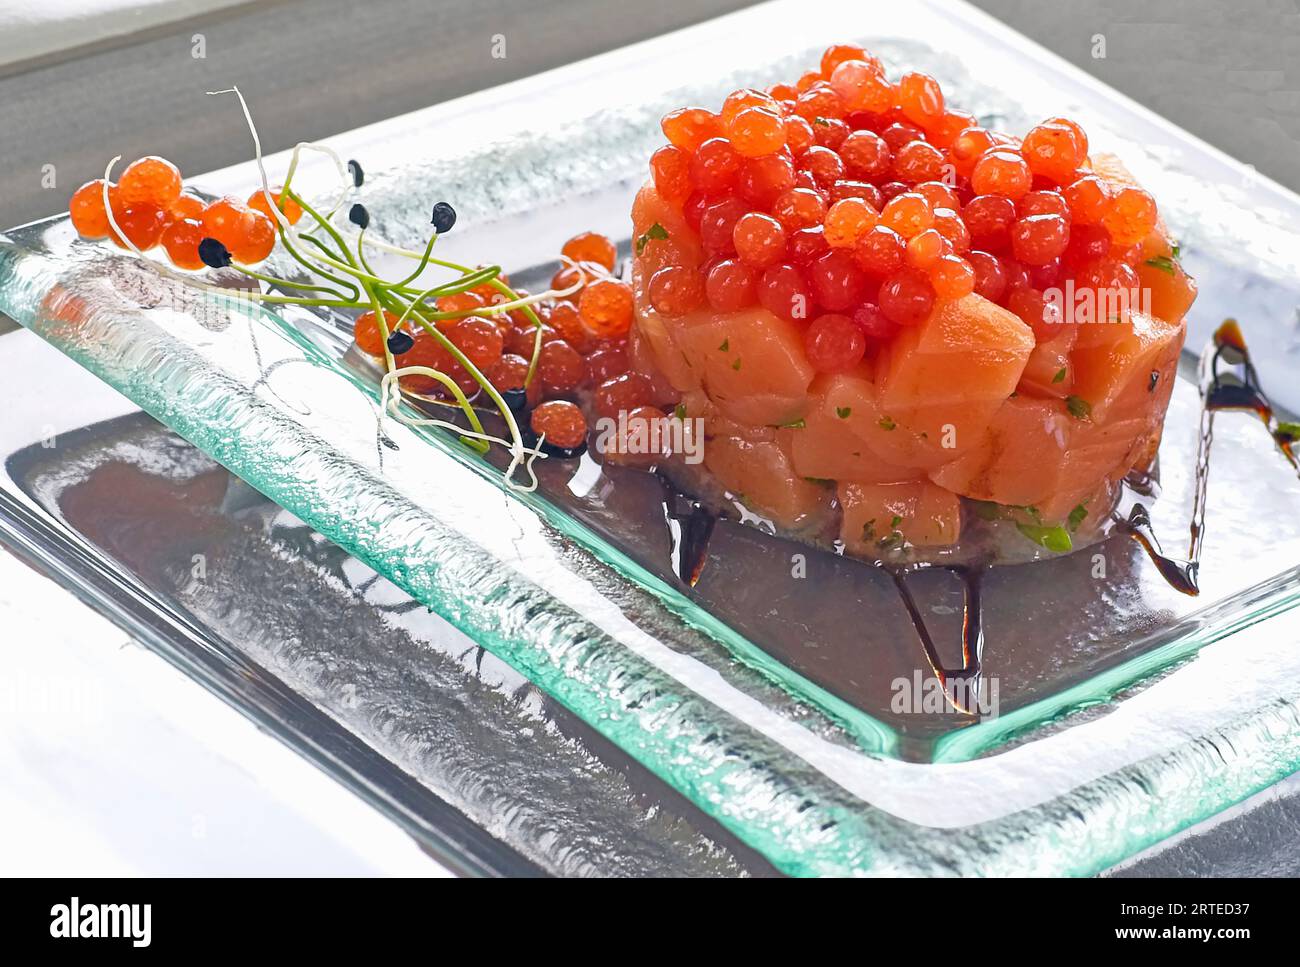 Salmon with ikura caviar Stock Photo